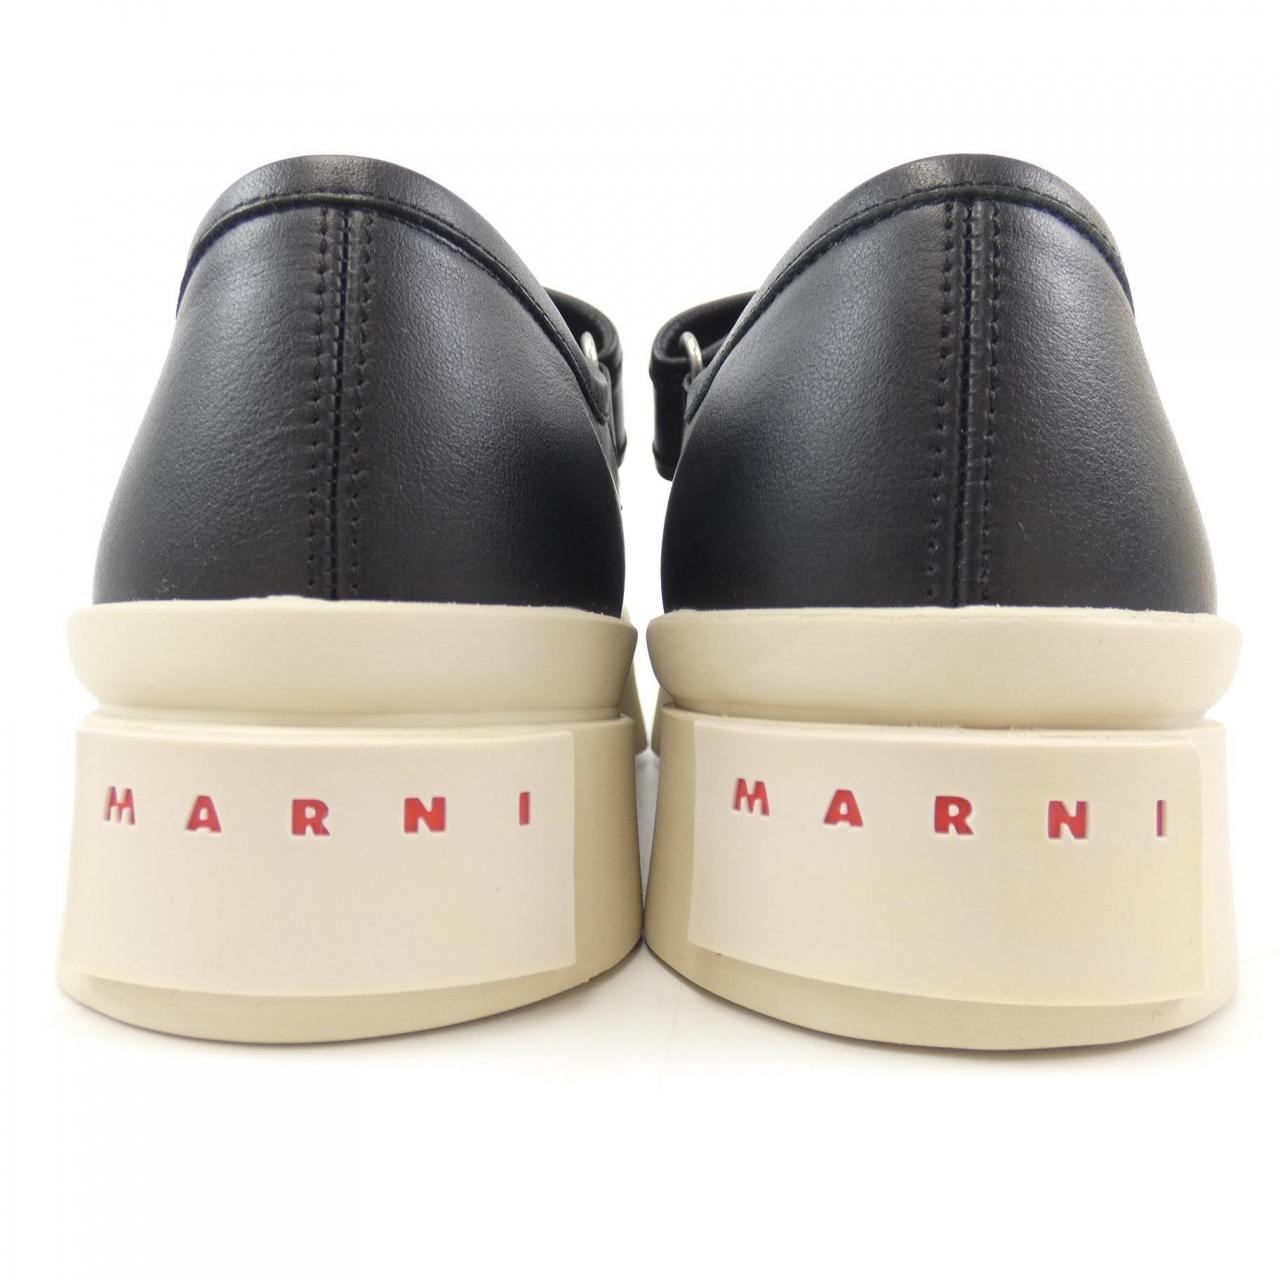 Marni sneakers